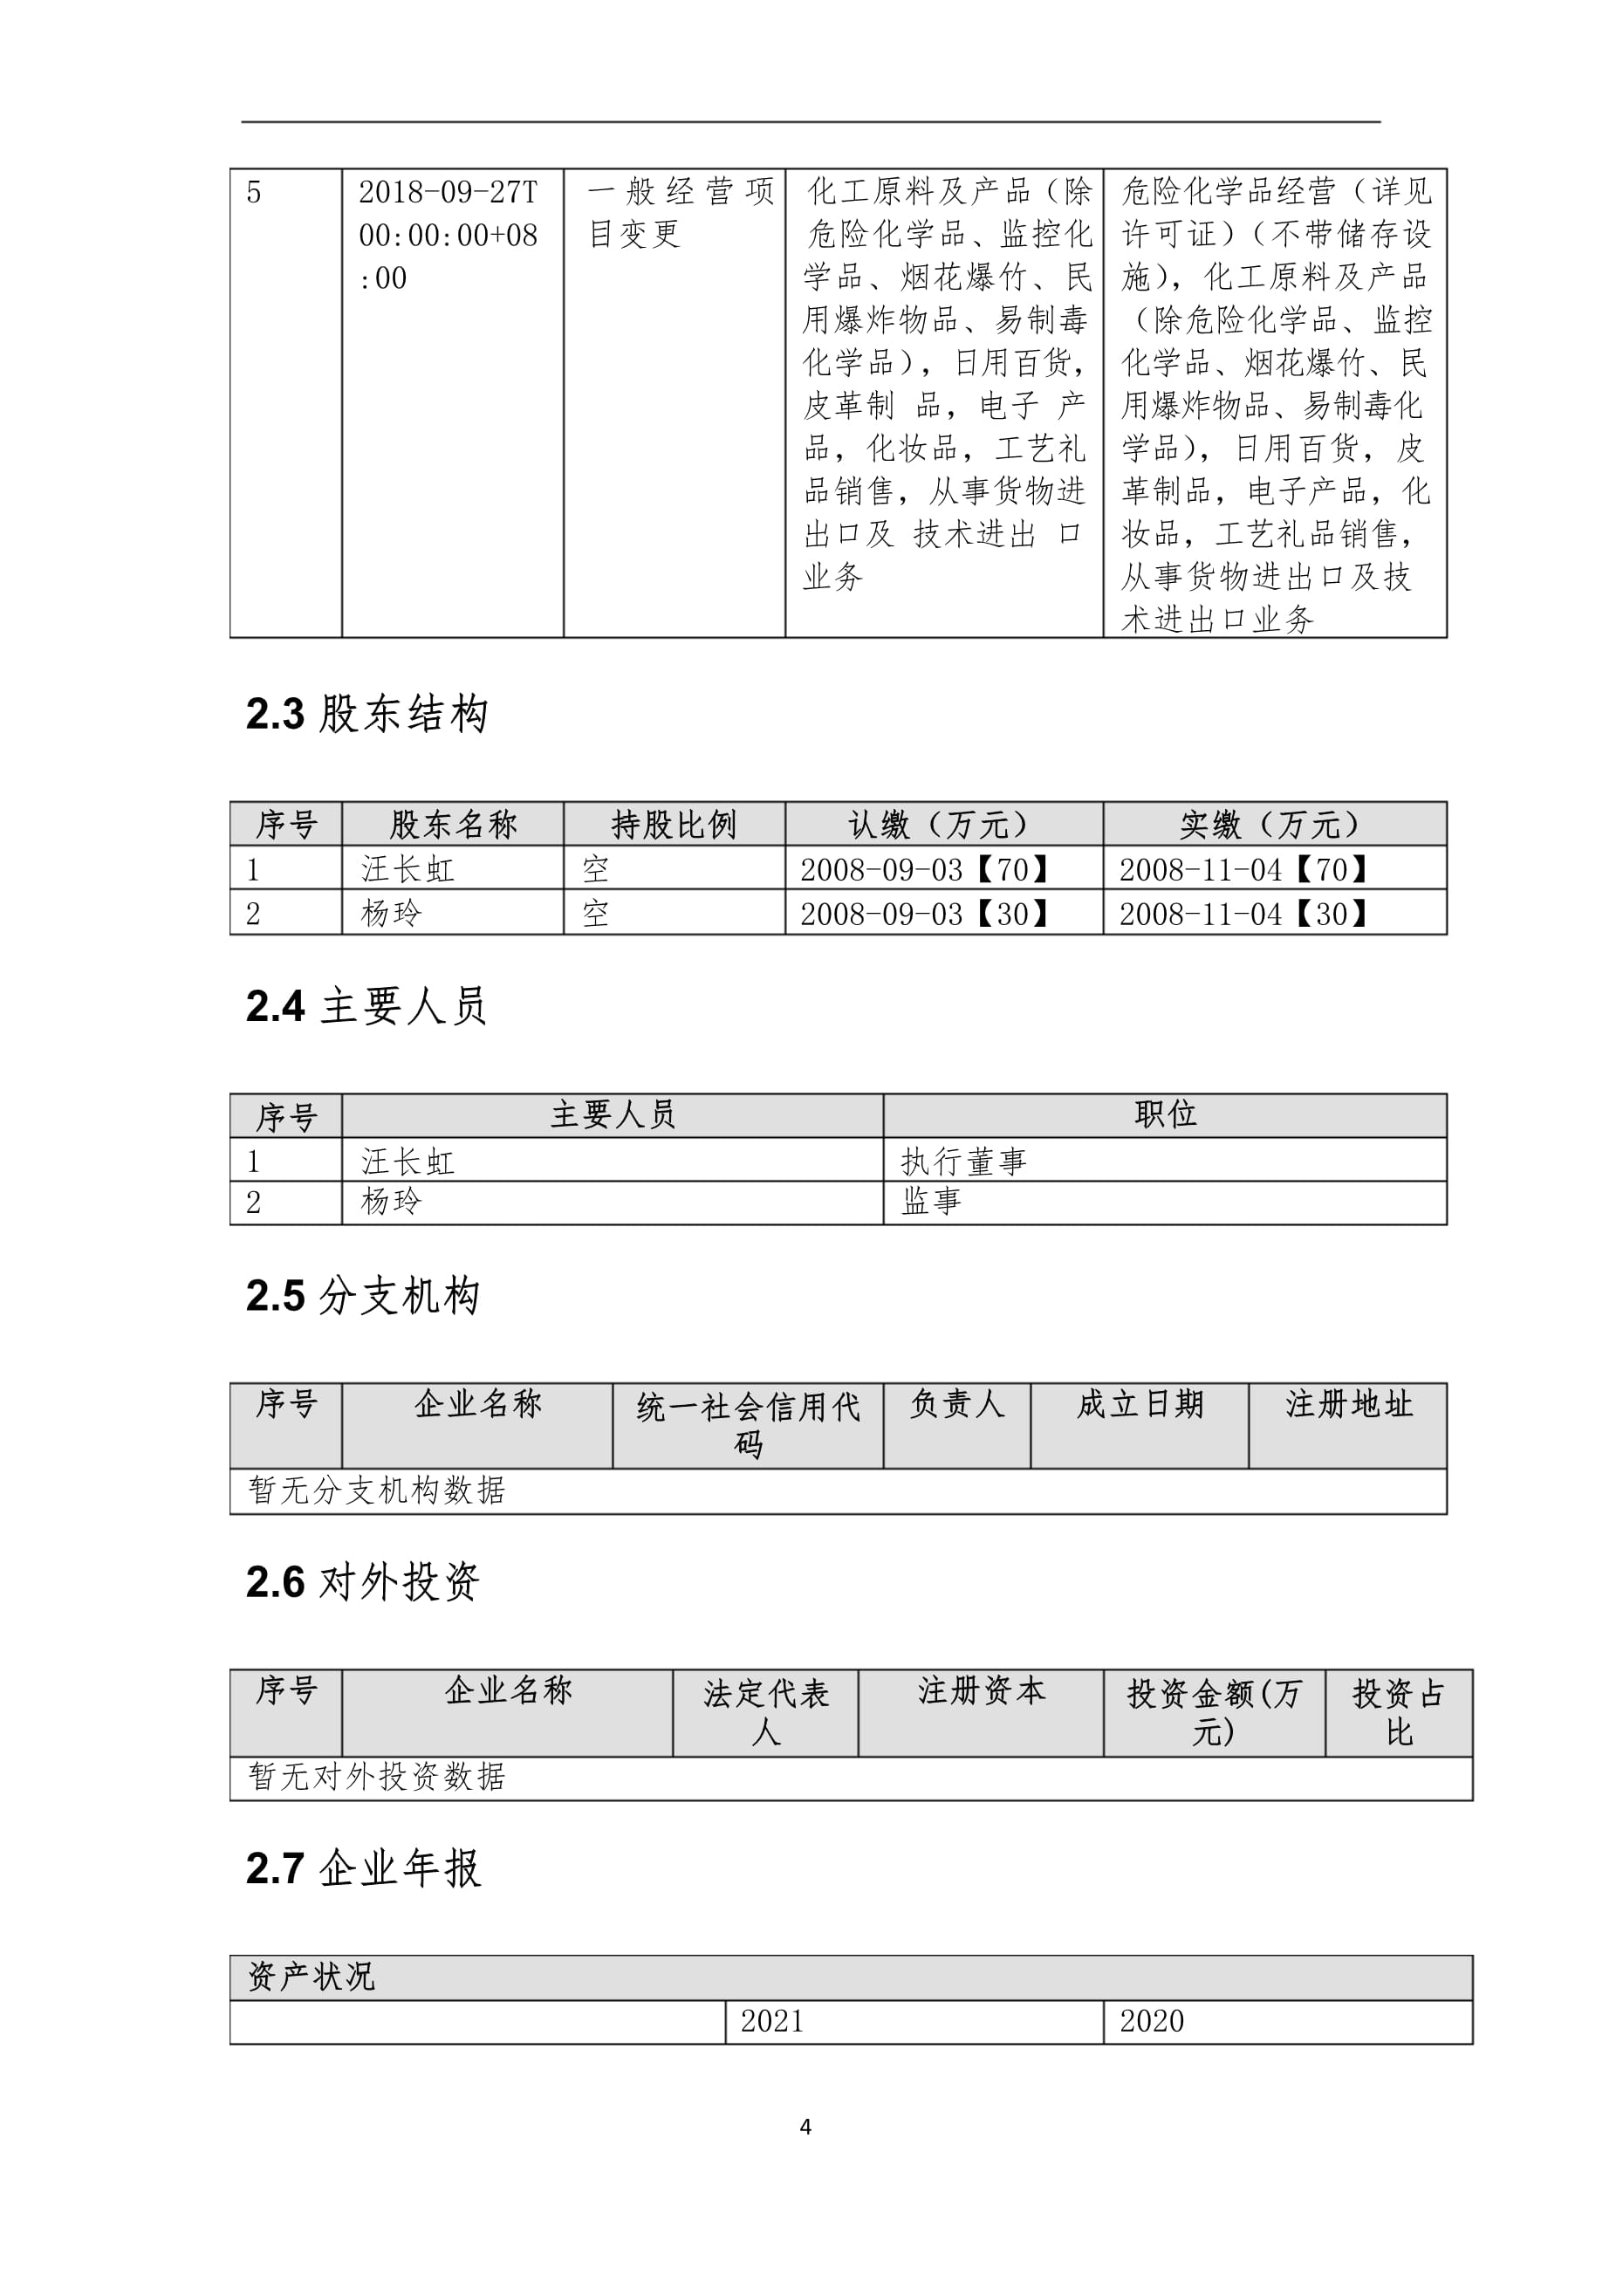 上海奥雅化工介绍企业发展分析报告